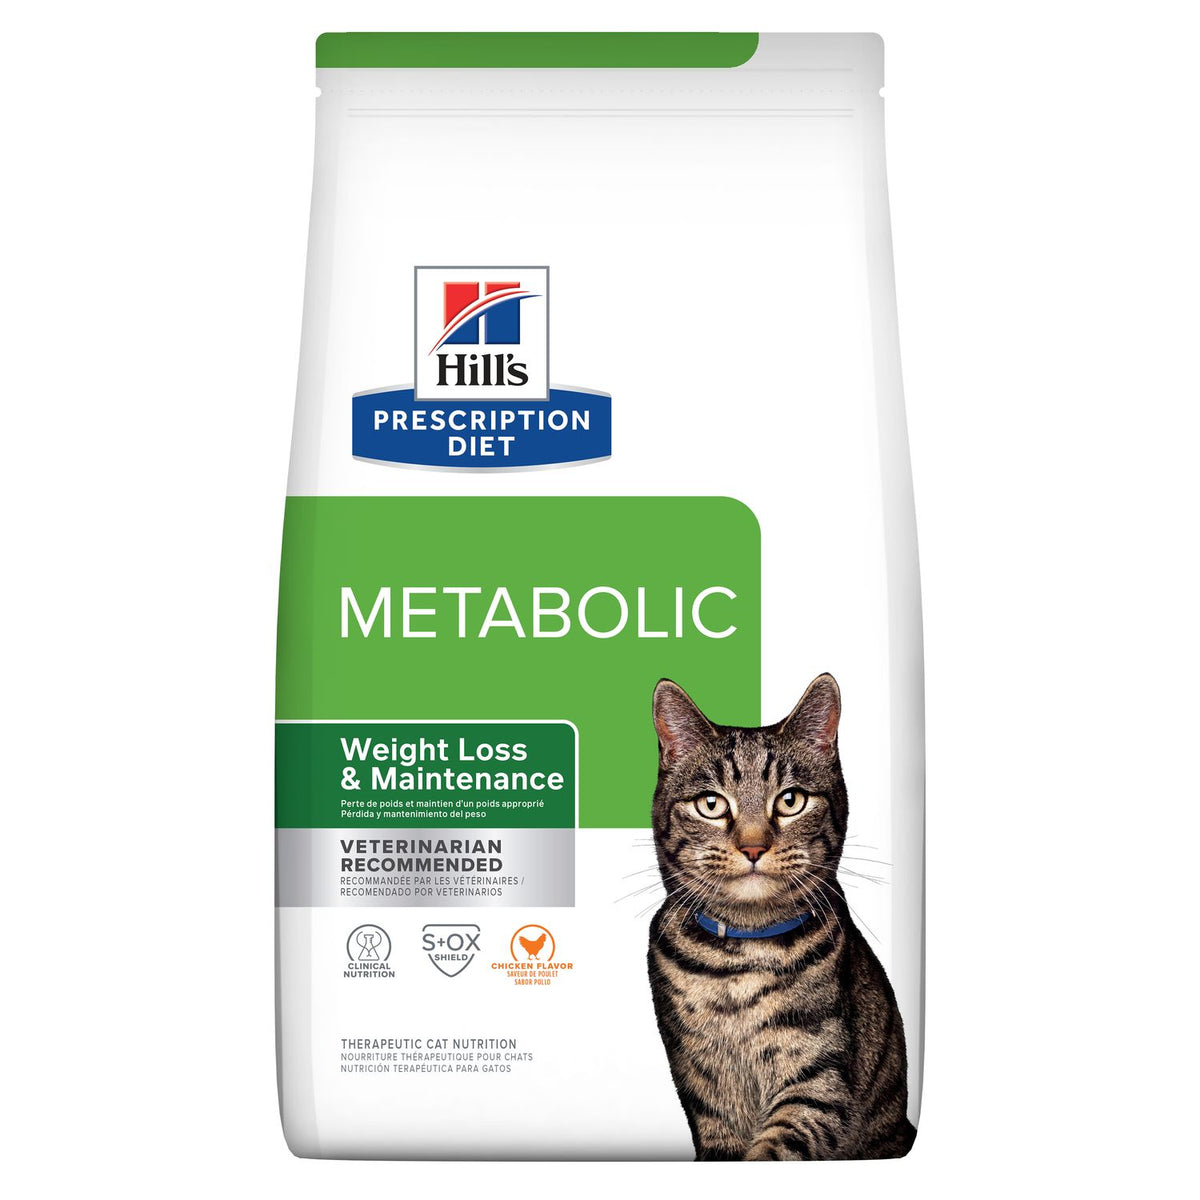 Hills Prescription Diet Metabolic Weight Management Cat